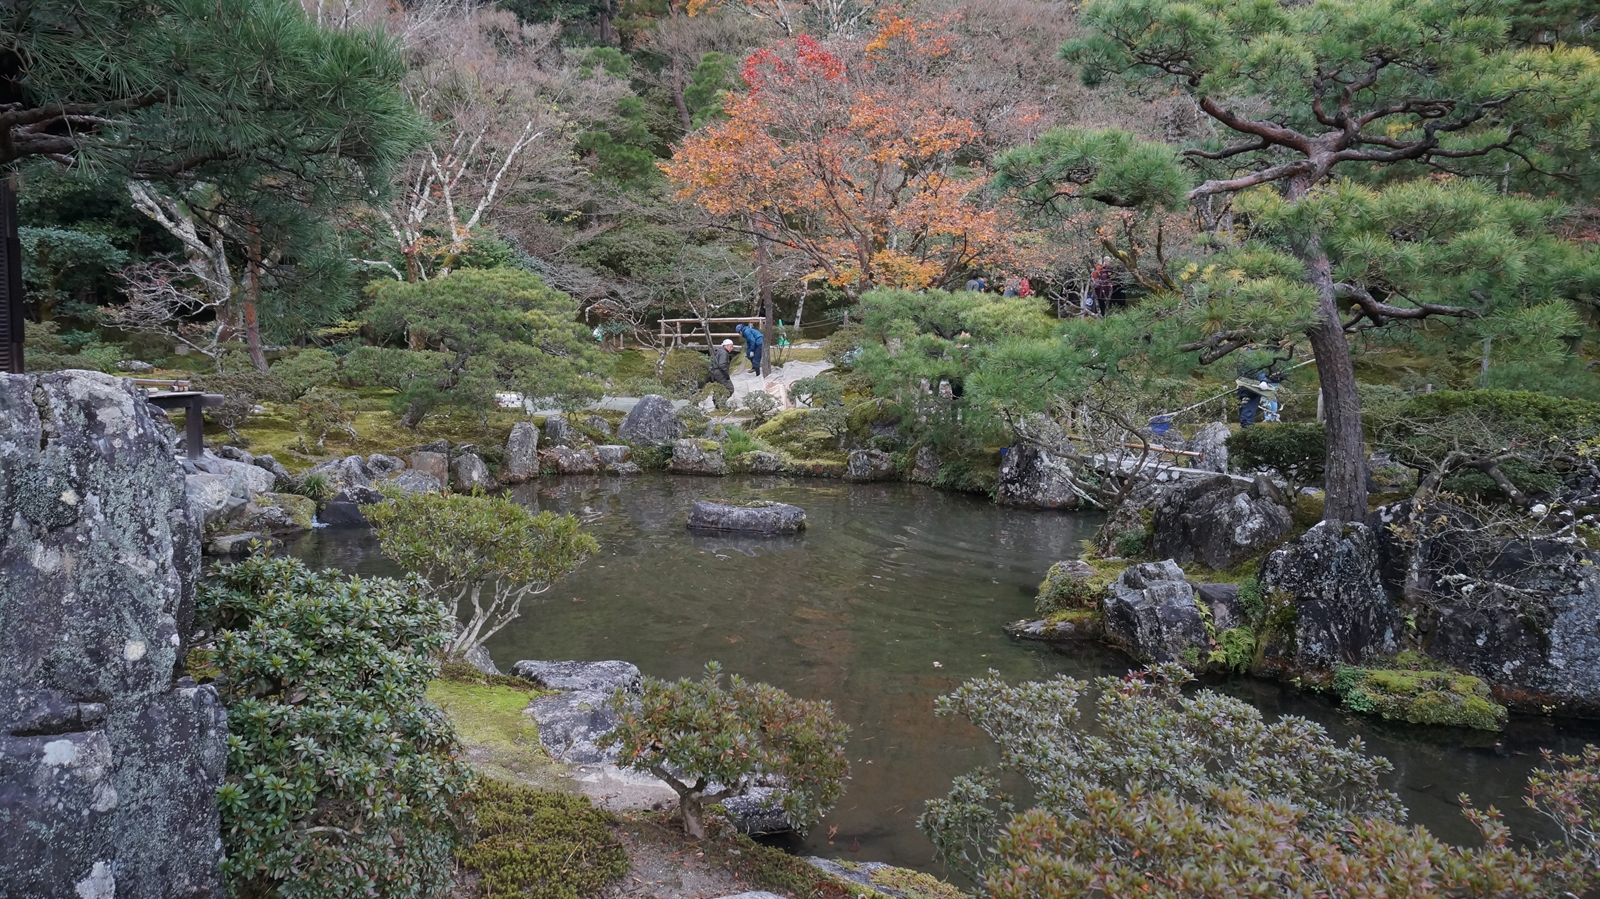 銀閣寺の庭園